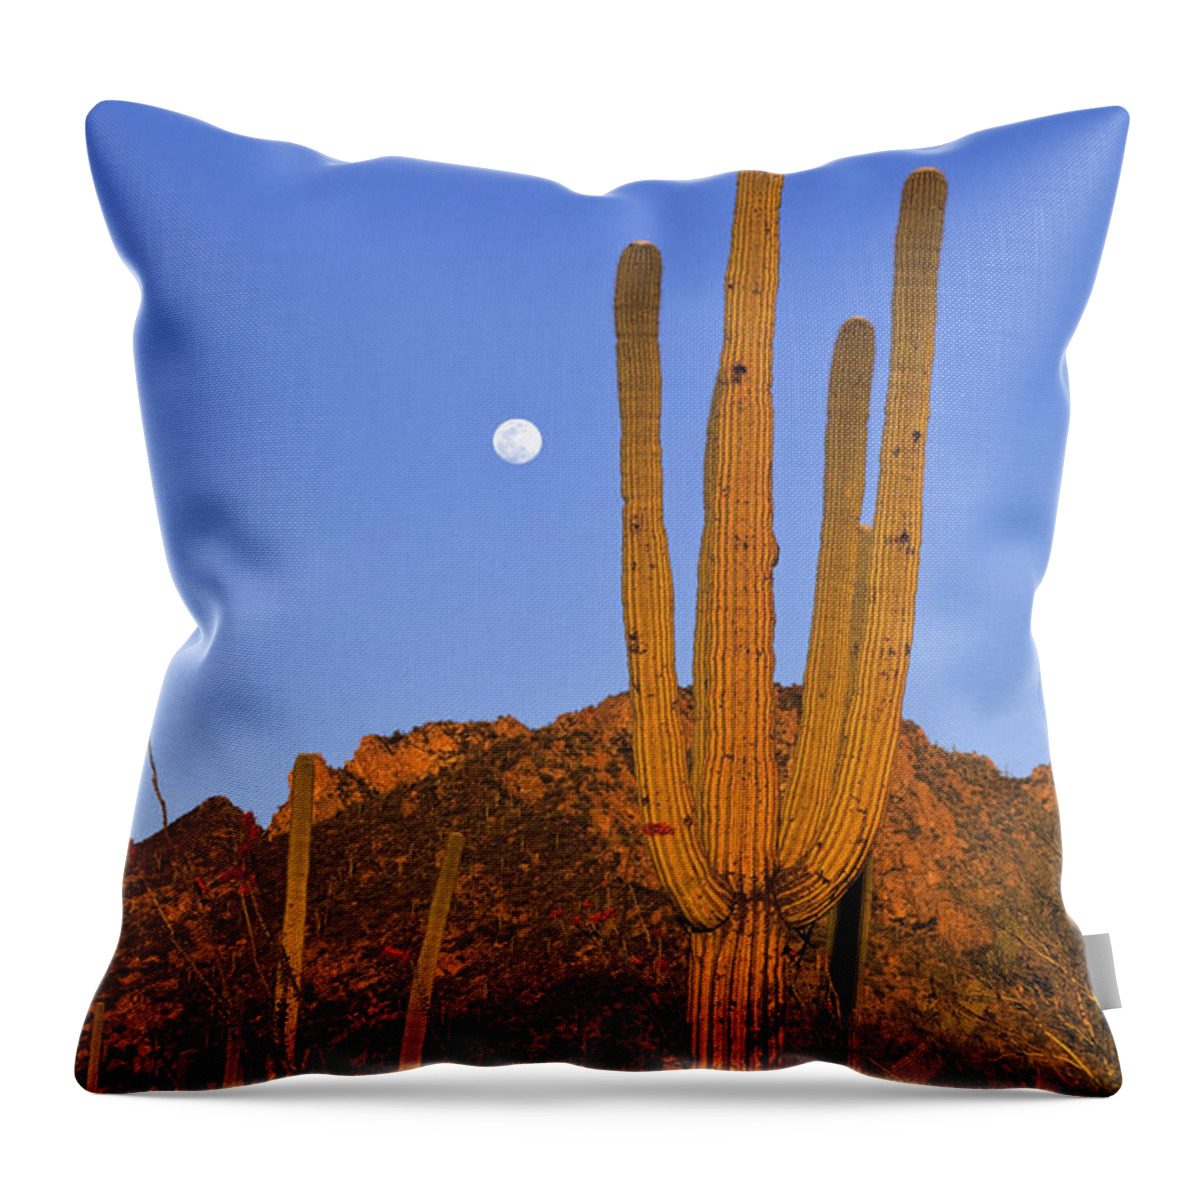 Mp Throw Pillow featuring the photograph Saguaro Carnegiea Gigantea Cactus by Konrad Wothe